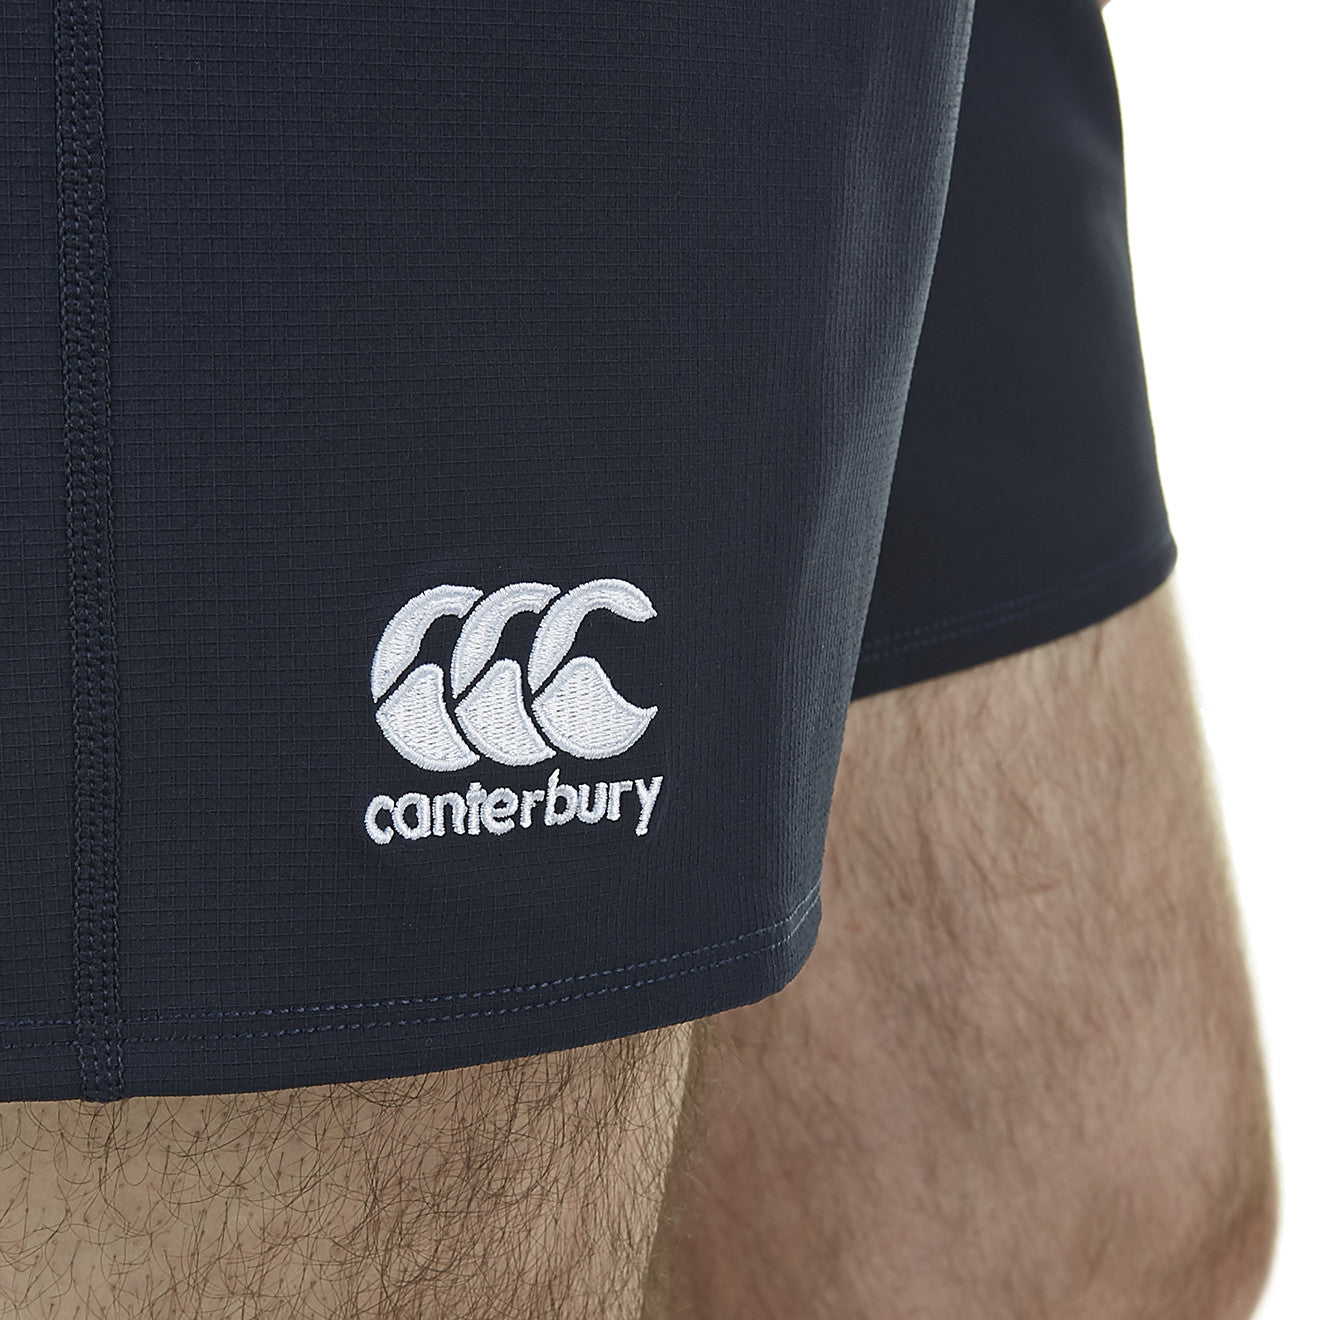 Tuam RFC Canterbury Club Pro Shorts